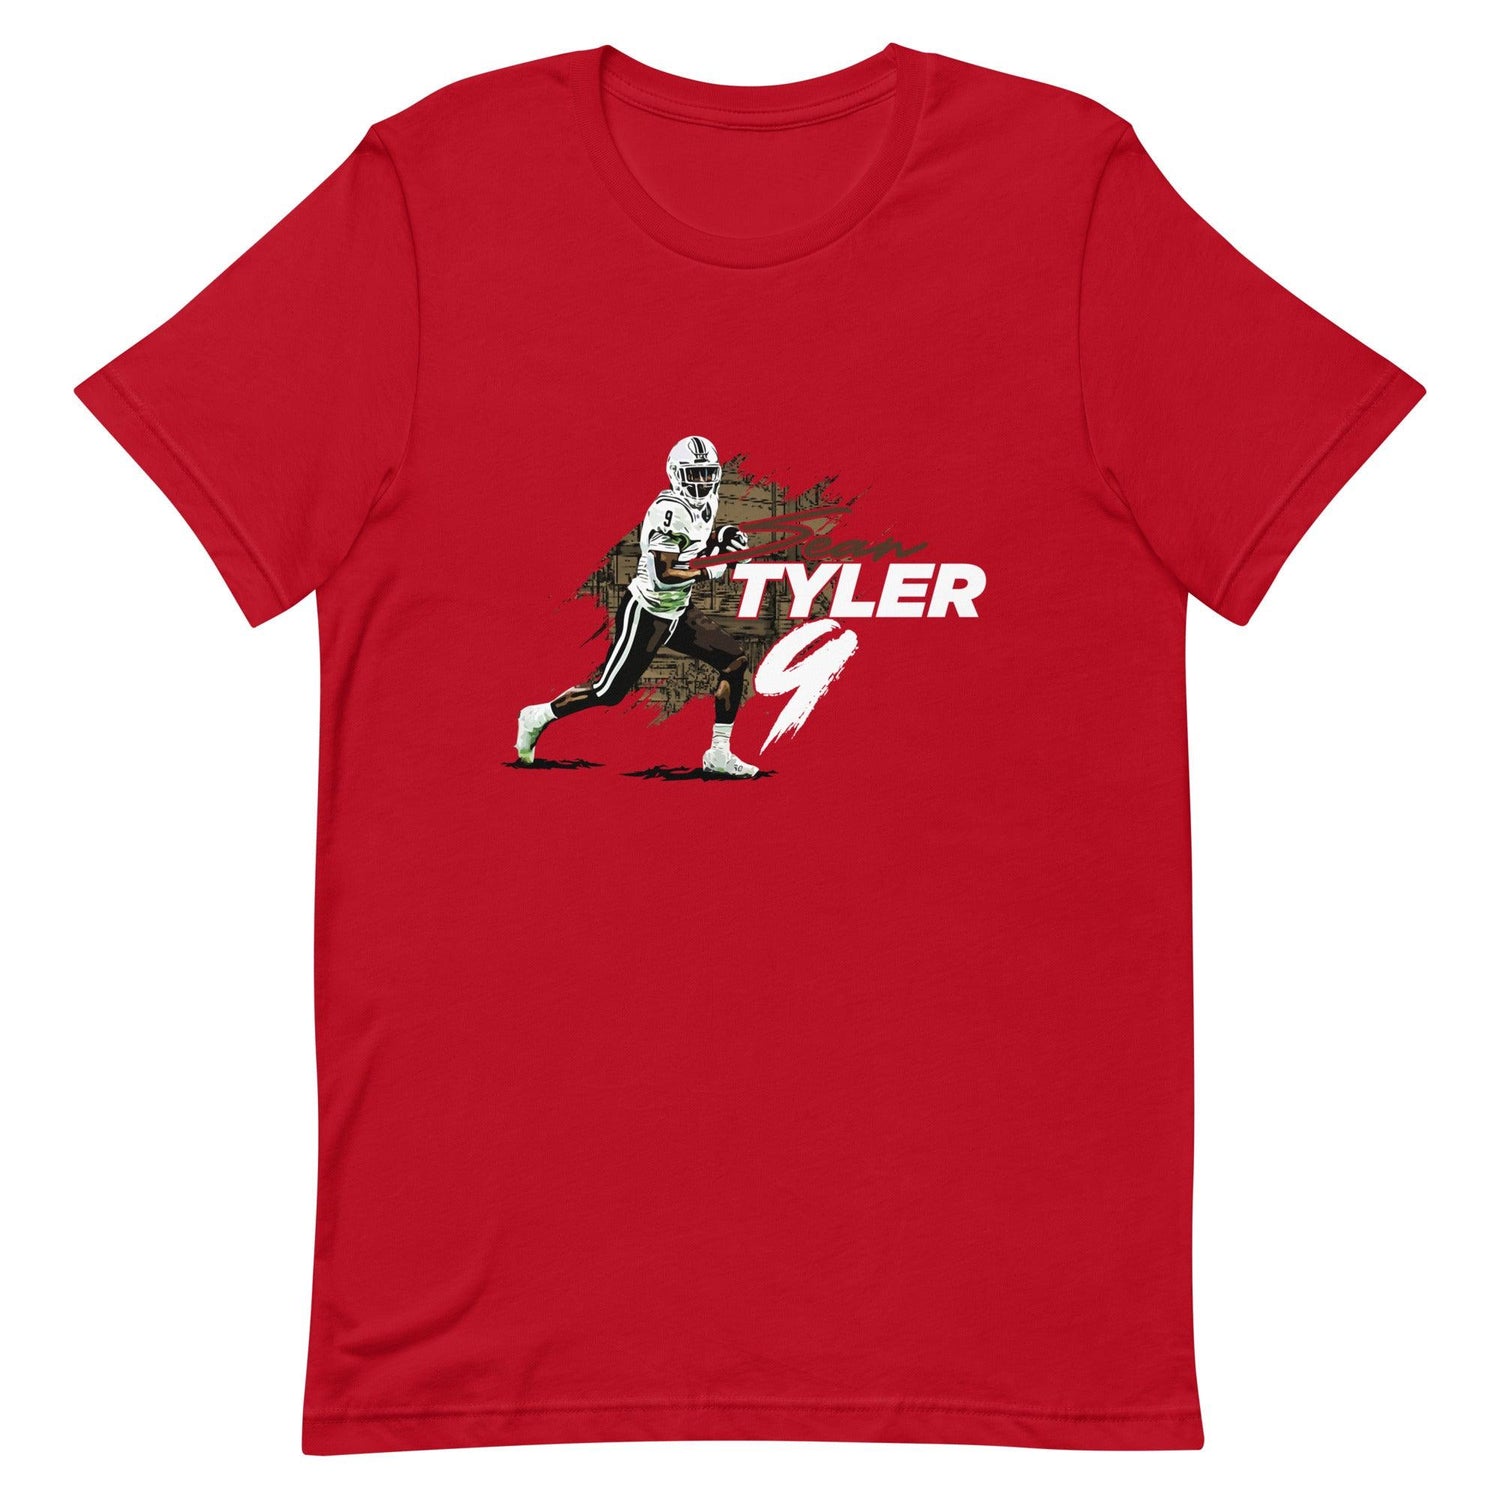 Sean Tyler "Run It" t-shirt - Fan Arch